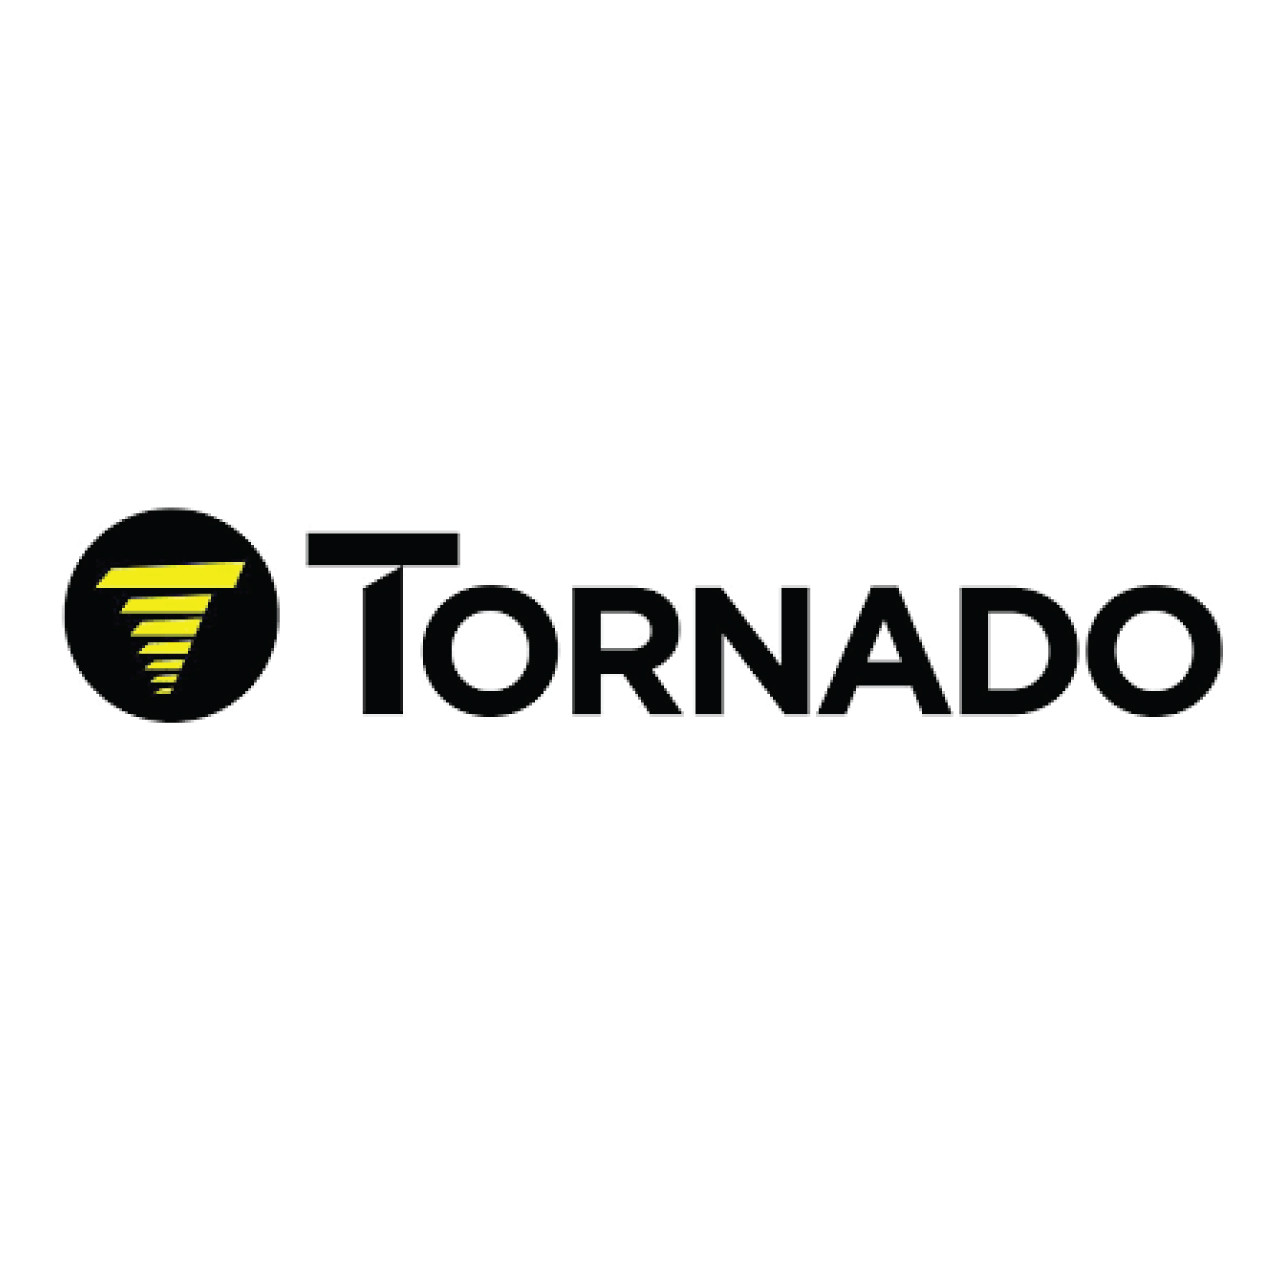 02-4492-0000, Tornado 02-4492-0000, Tornado SPLASH PROOF COVER CAS16, Tornado parts